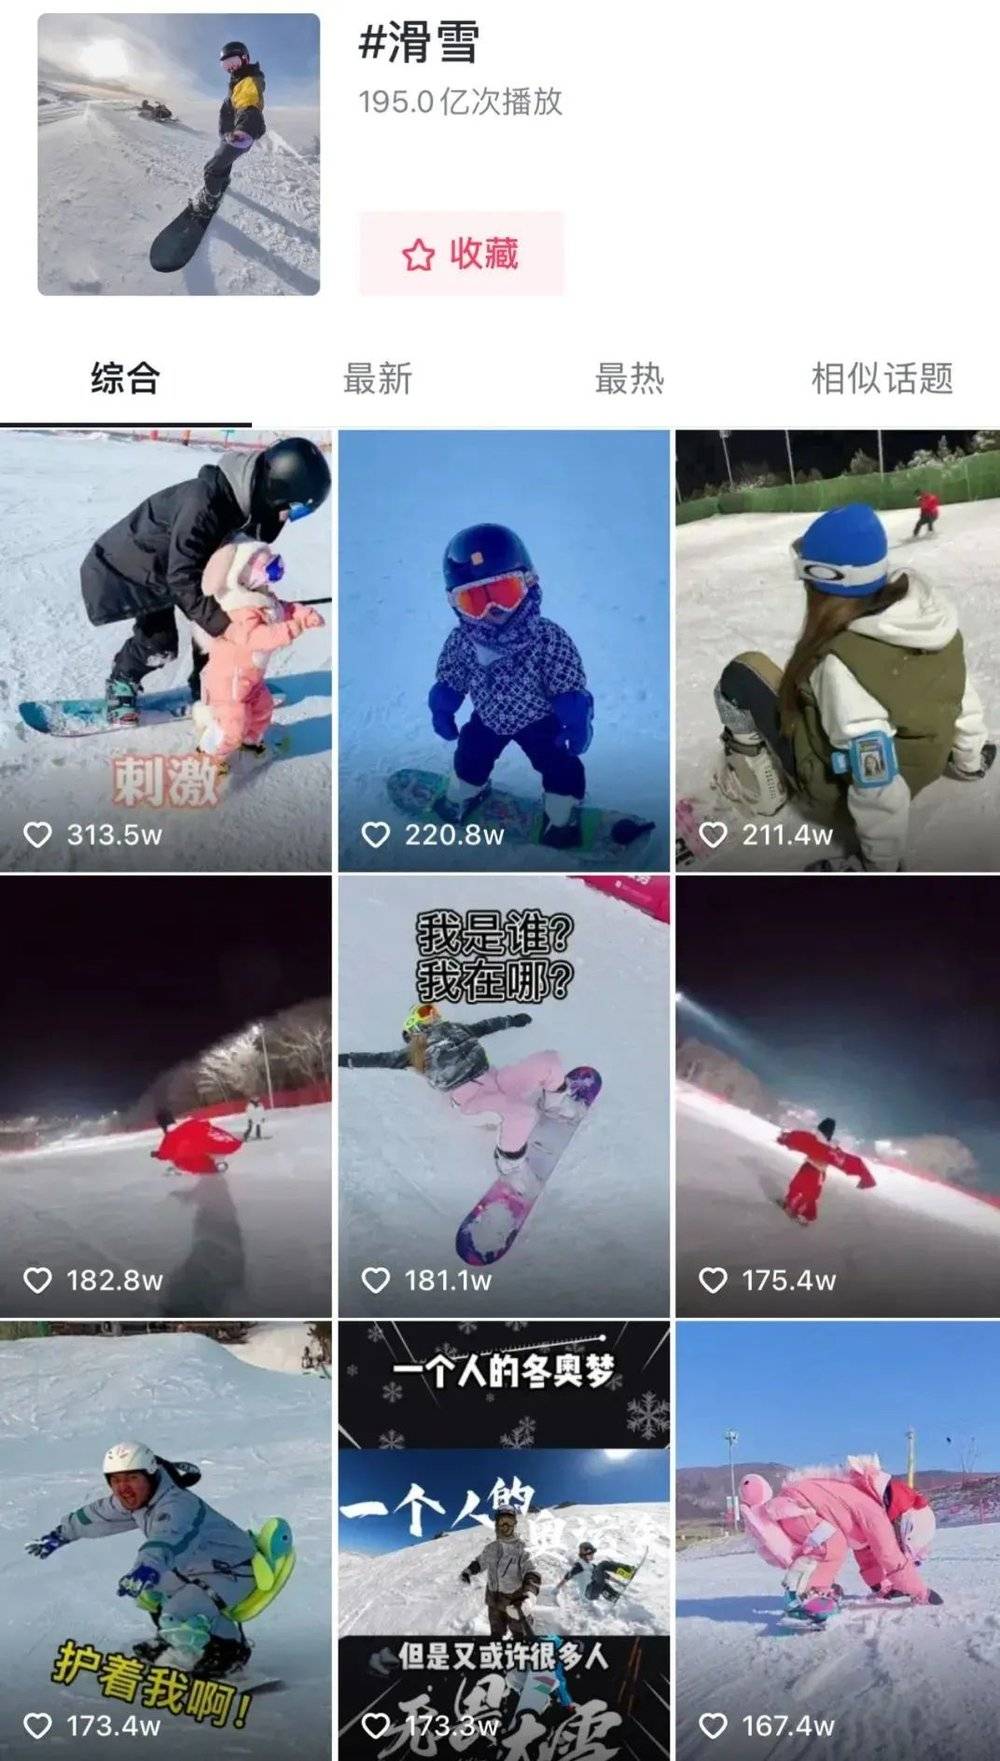 短视频平台“滑雪”话题下，很多滑雪博主发布视频 | 图源刺猬公社<br>